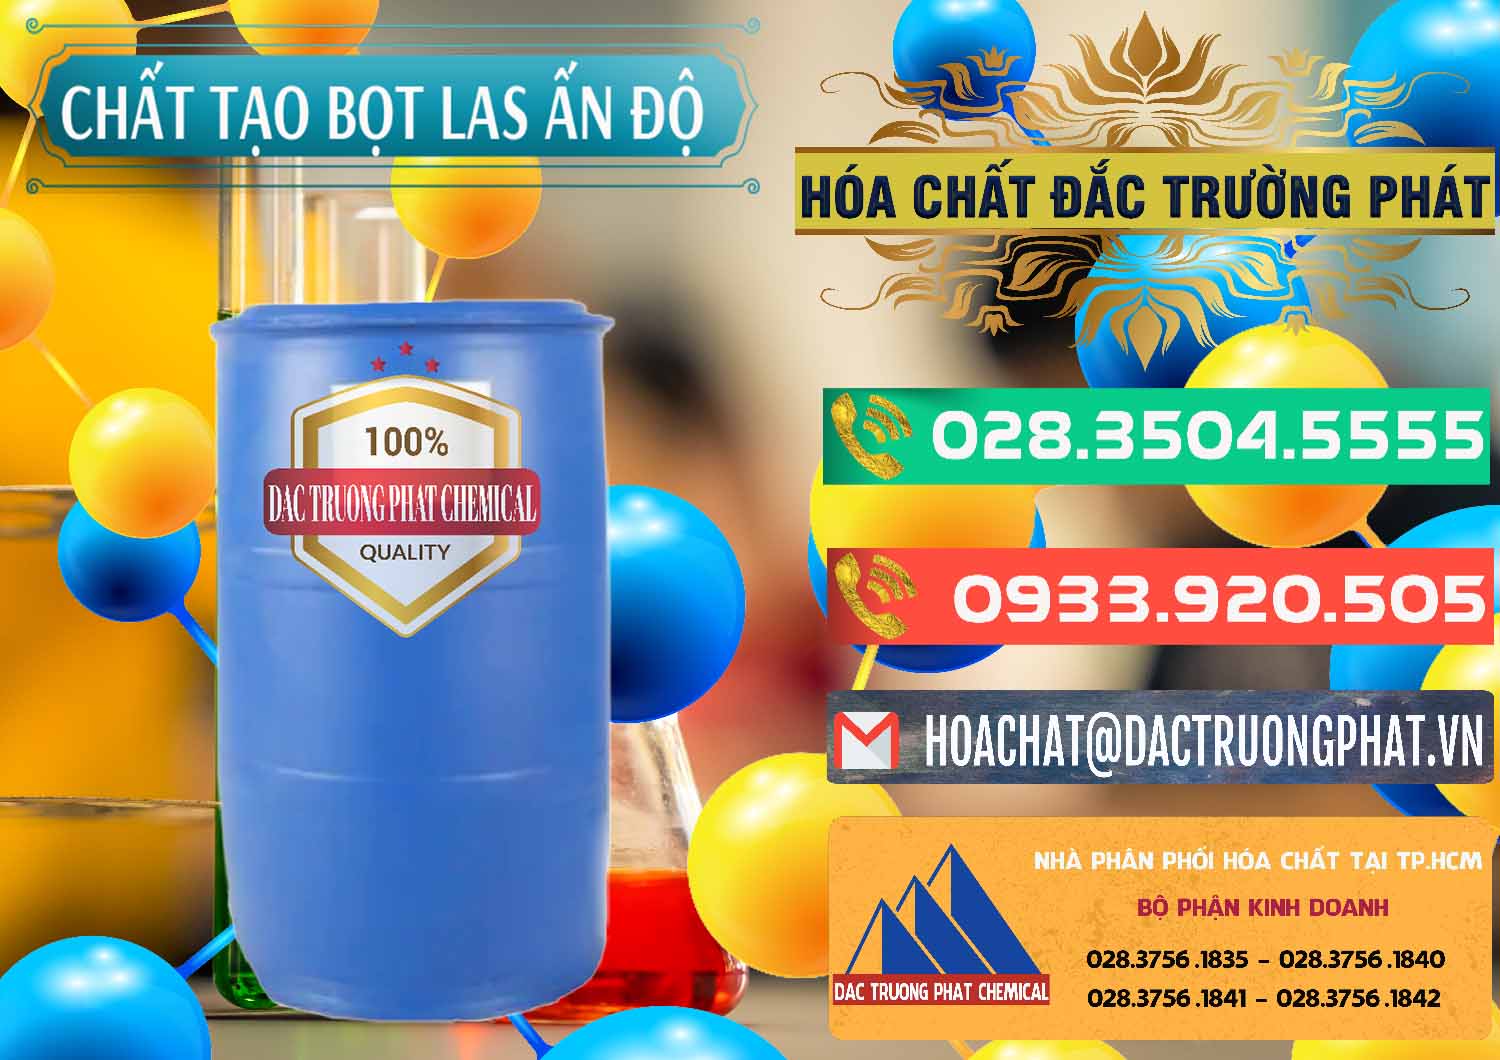 Cty kinh doanh và bán Chất tạo bọt Las Ấn Độ India - 0477 - Công ty bán và cung cấp hóa chất tại TP.HCM - congtyhoachat.com.vn